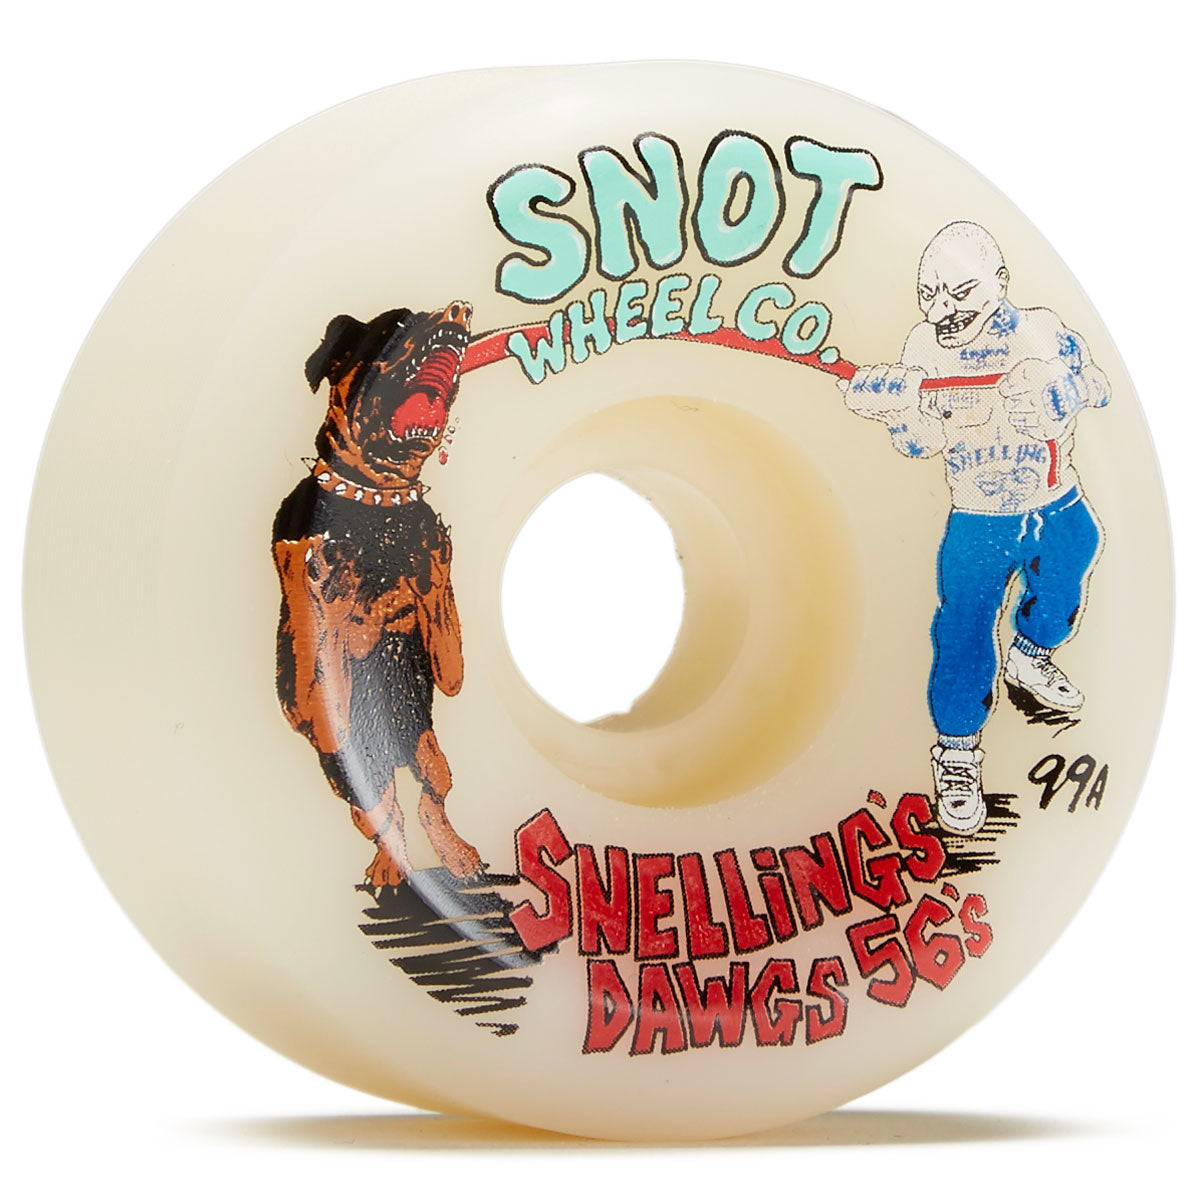 Snot Snellings Dawgs Skateboard Wheels - 56mm image 1